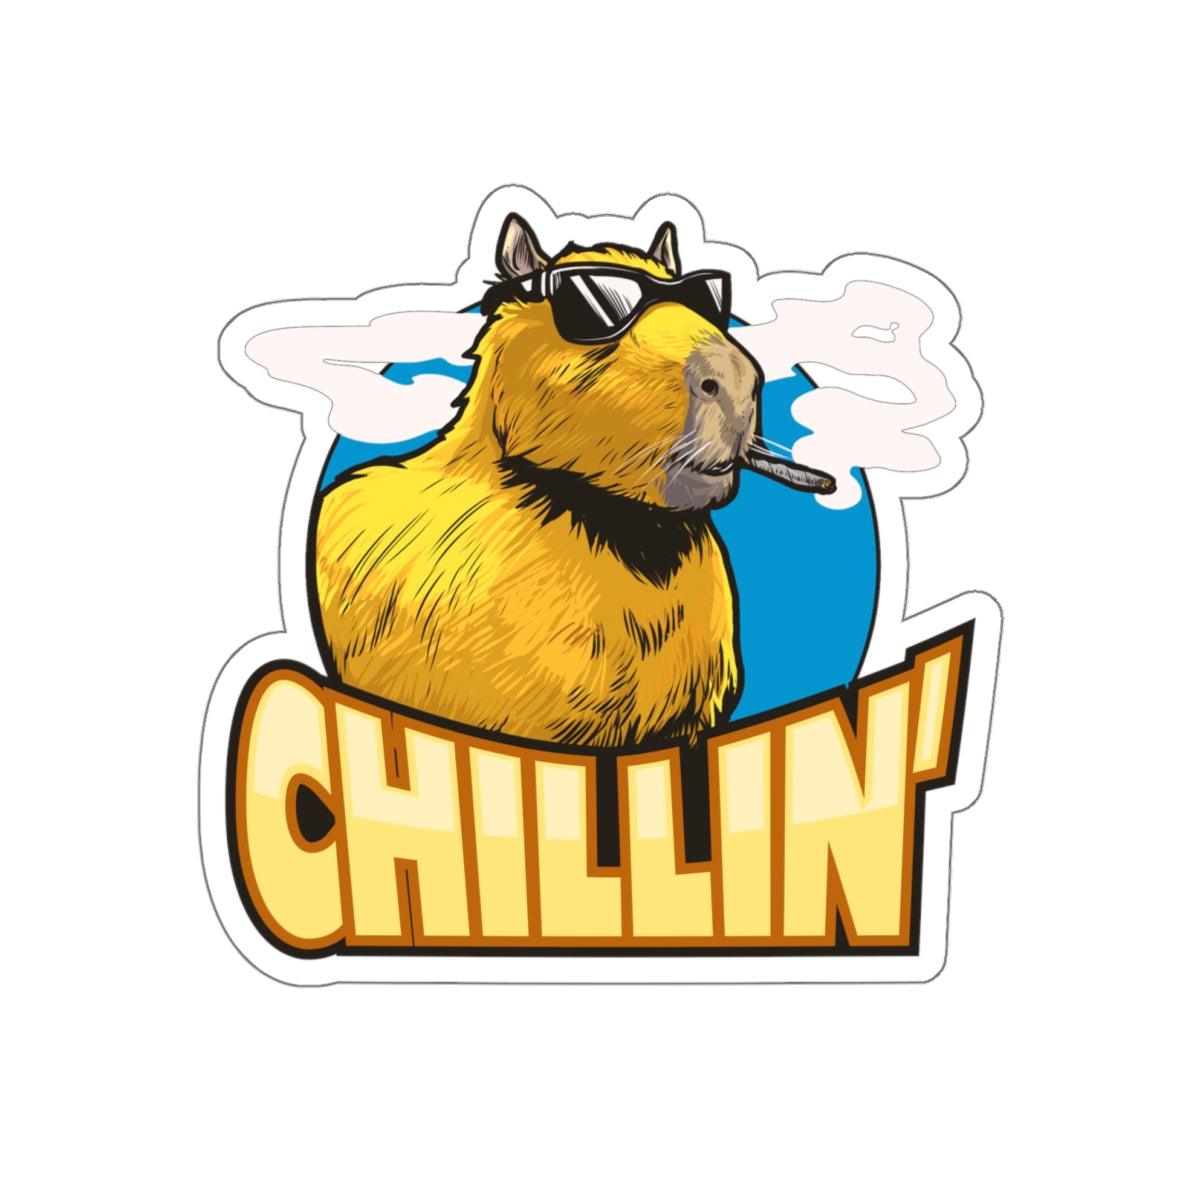 Capybara chillin - Die-Cut Stickers - Shaneinvasion